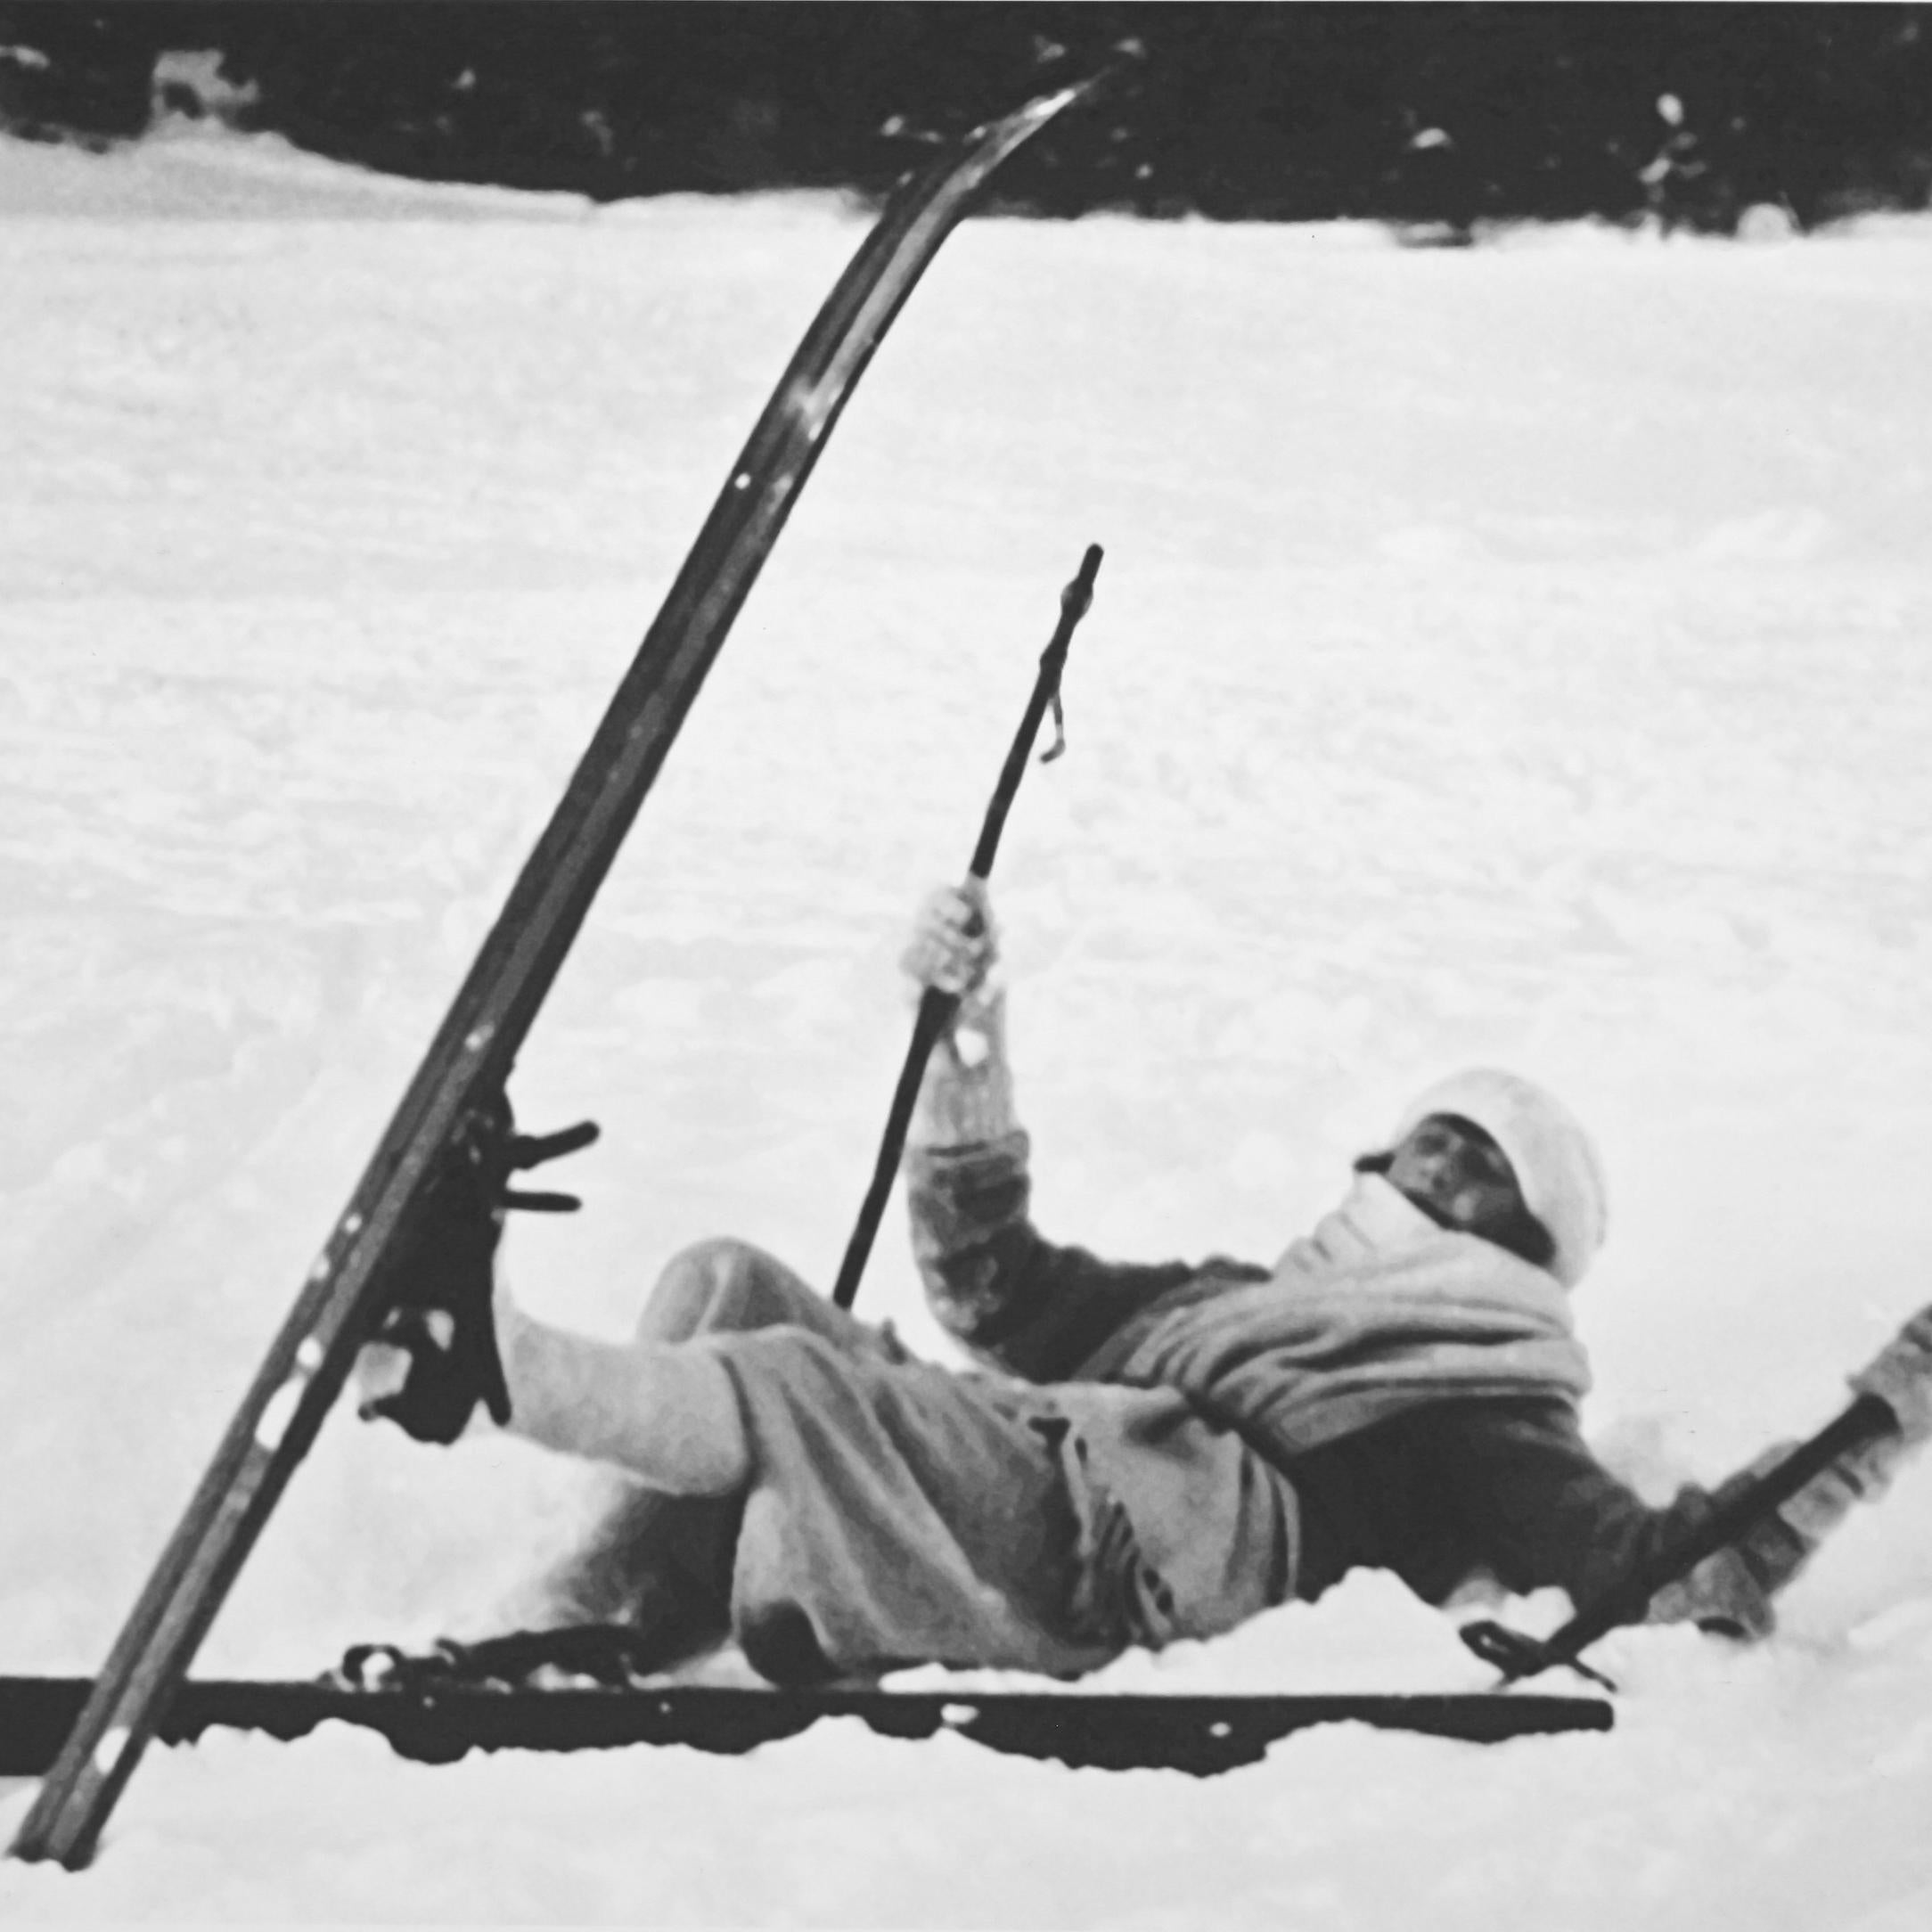 Skifotografie im Vintage-Stil, antike Alpin-Skifotografie, 'OPPS' (Englisch) im Angebot